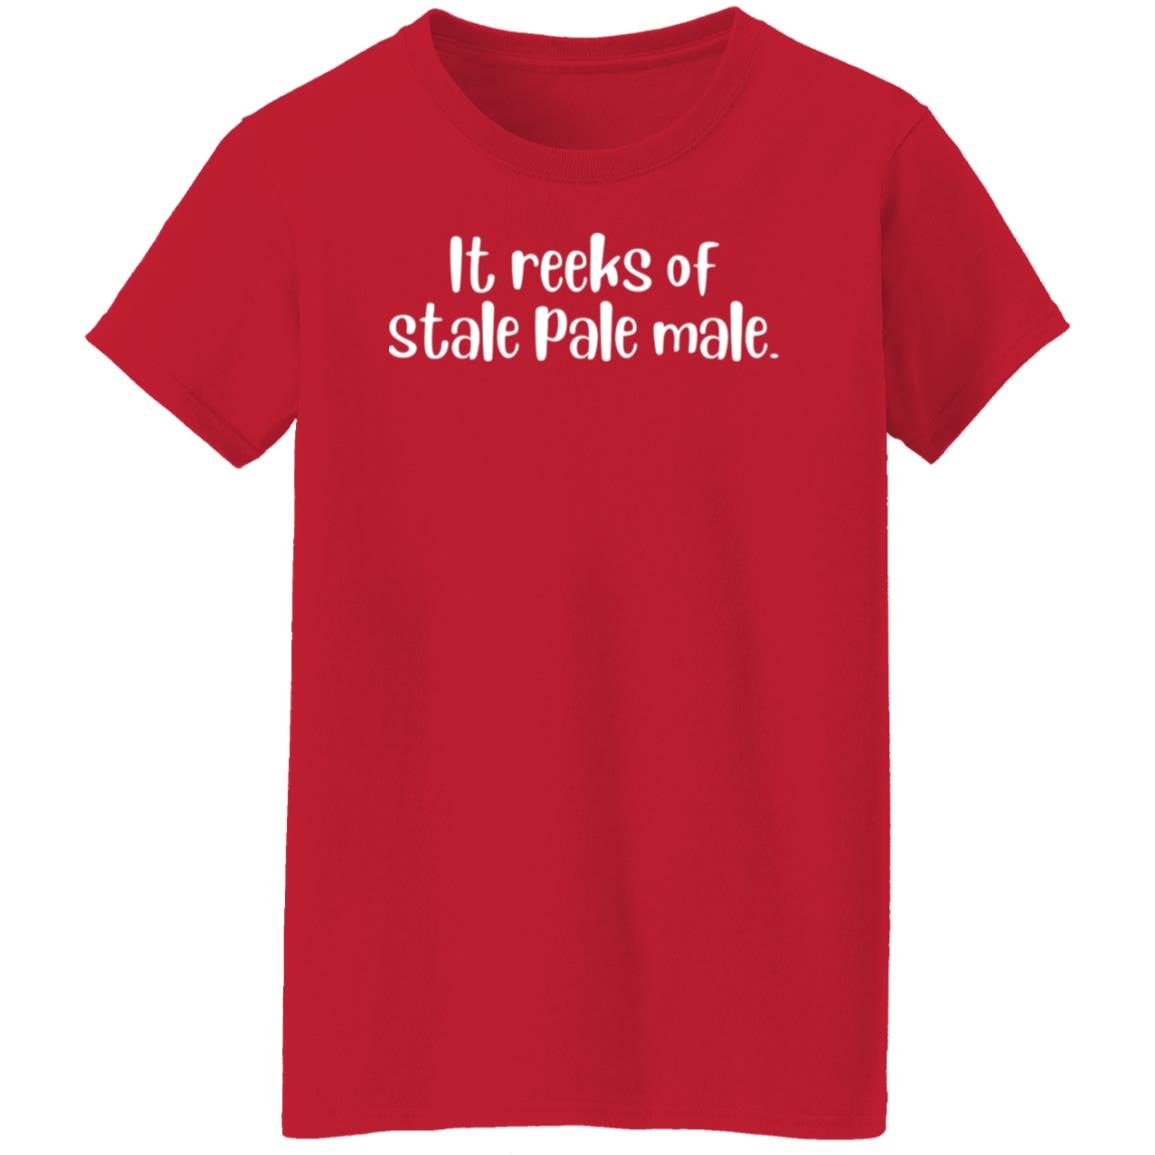 It reeks of stale pale male. T-Shirt